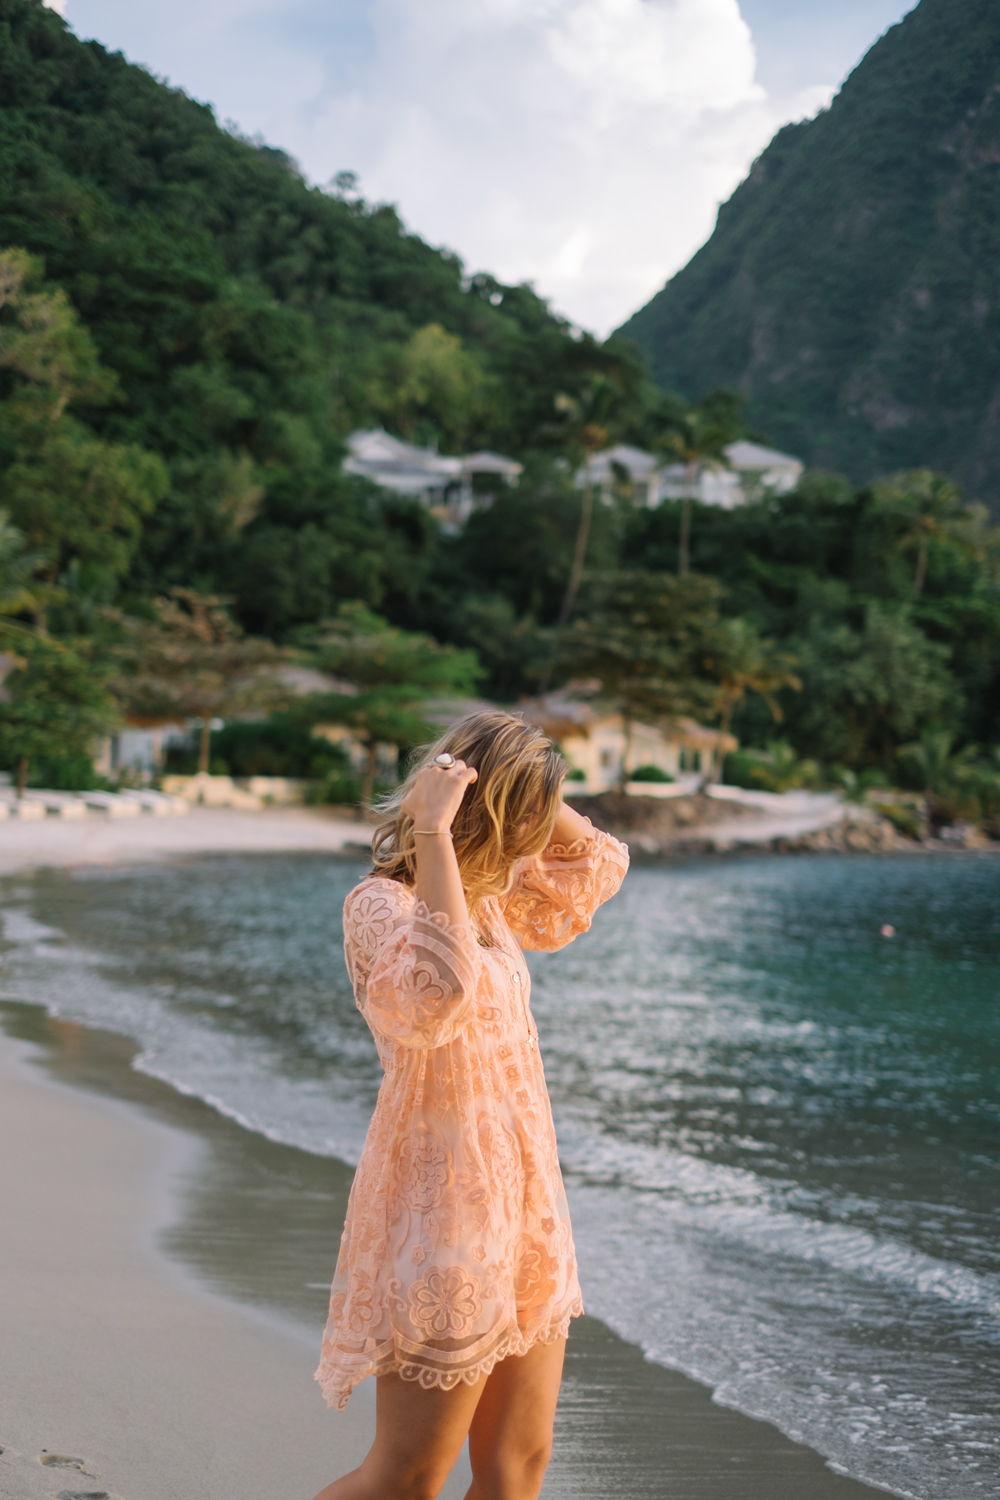 Free People Lace Dress in St. Lucia — It's Julien